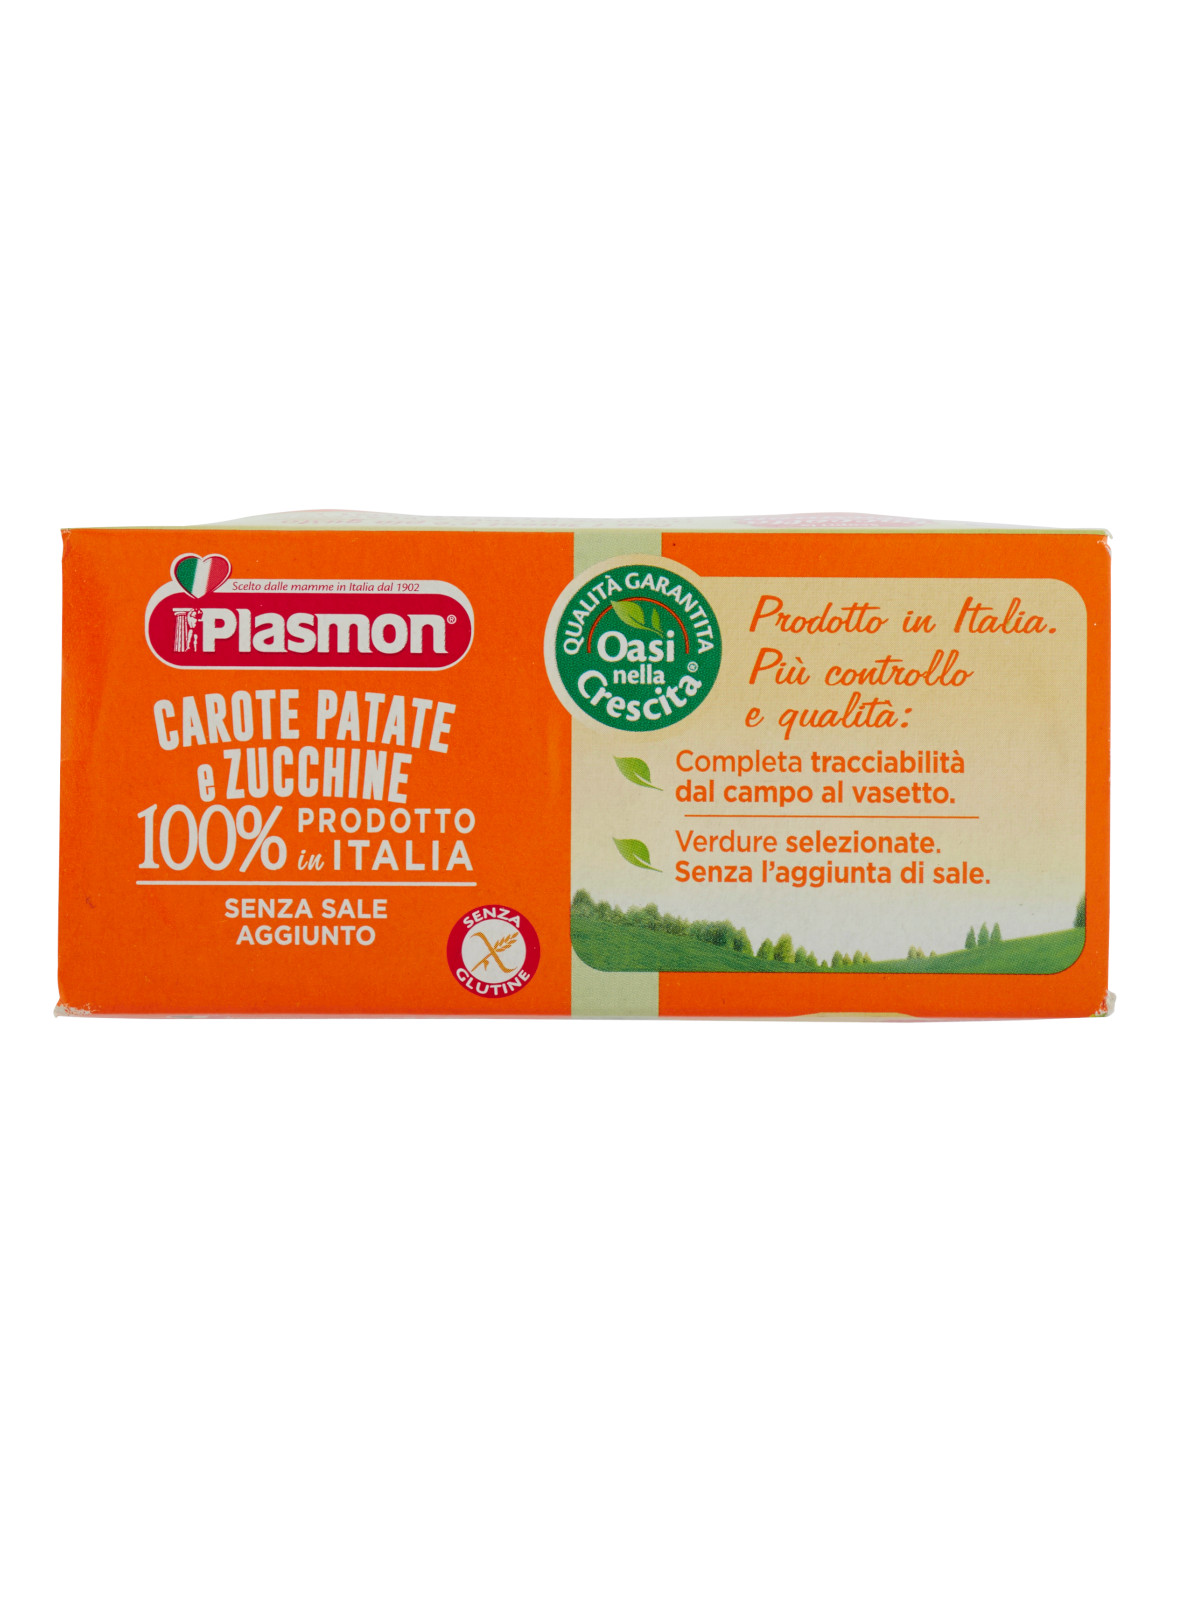 Plasmon Carote Patate e Zucchine Carottes homogénéisées Pommes de